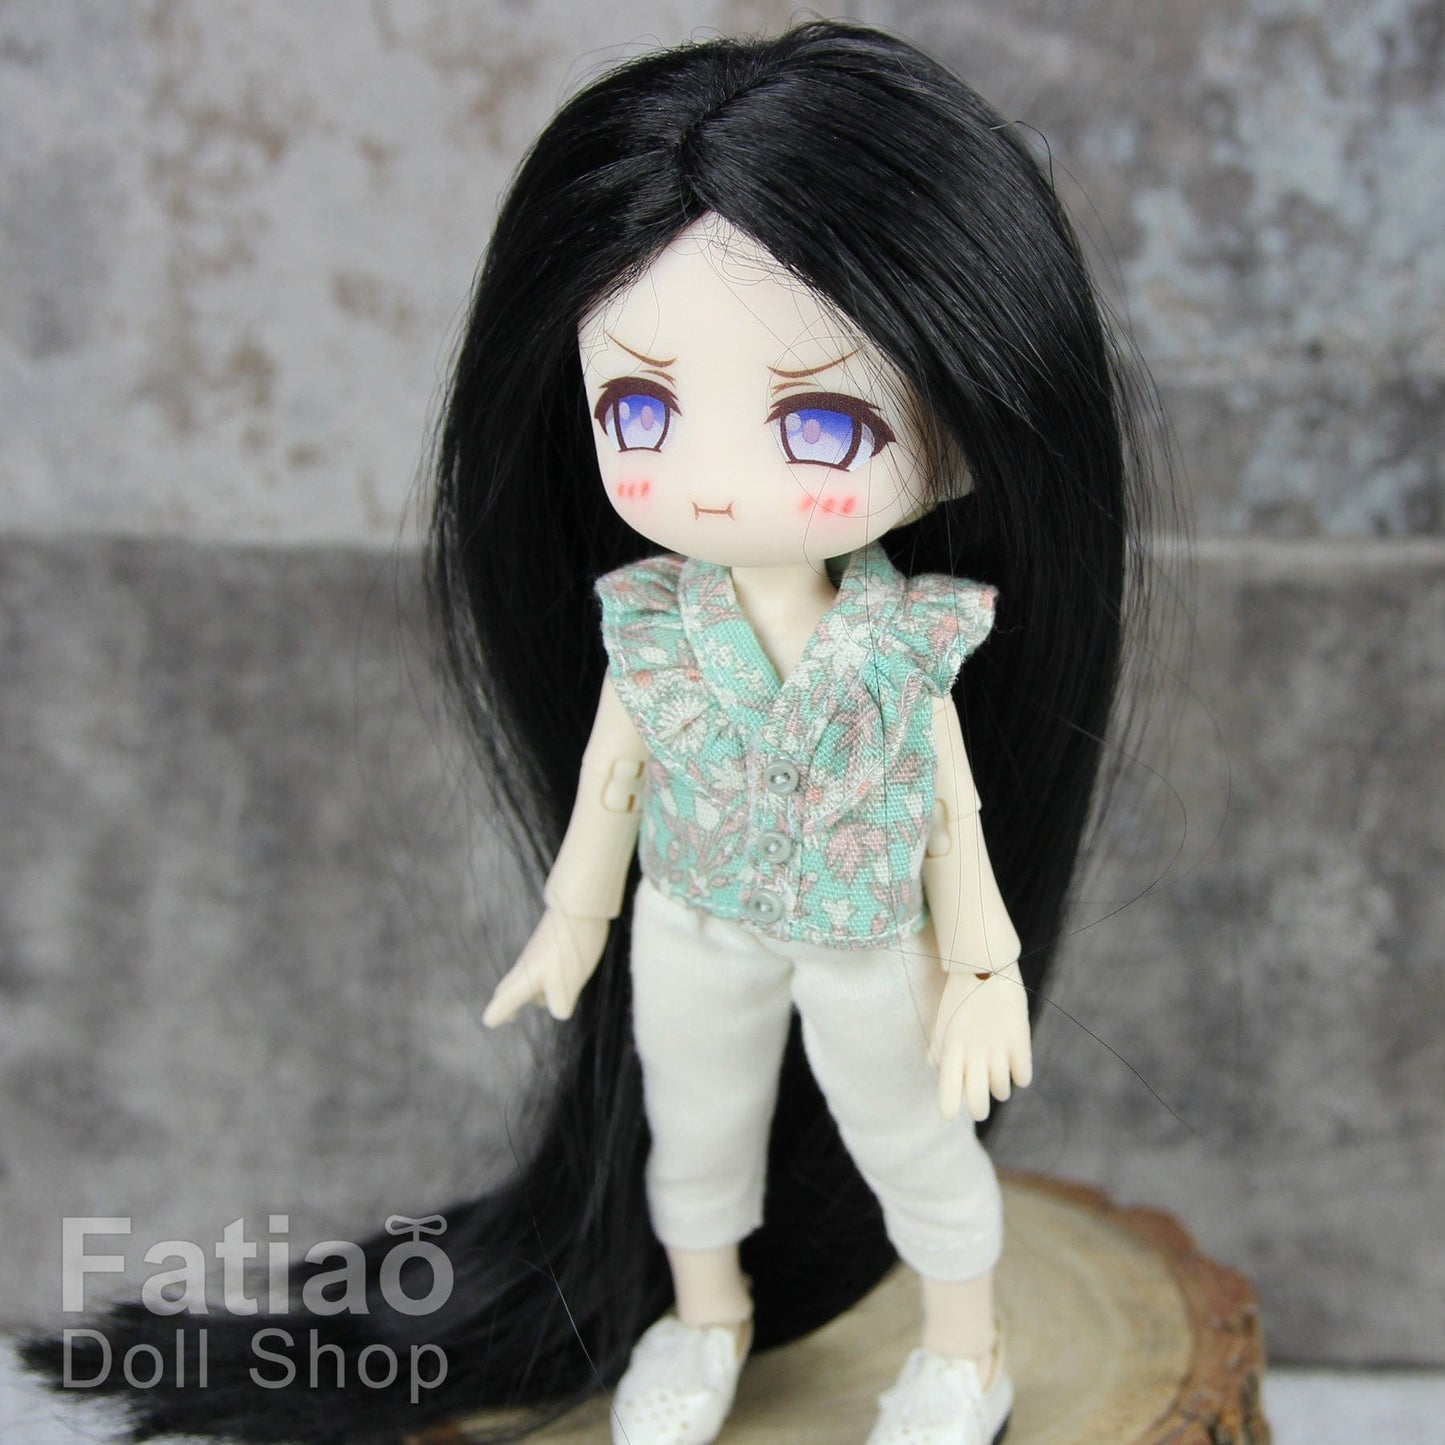 【Fatiao Doll Shop】FWF-016 娃用假髮 多色 / 4-5吋 BJD 8分 12分 iMda1.7